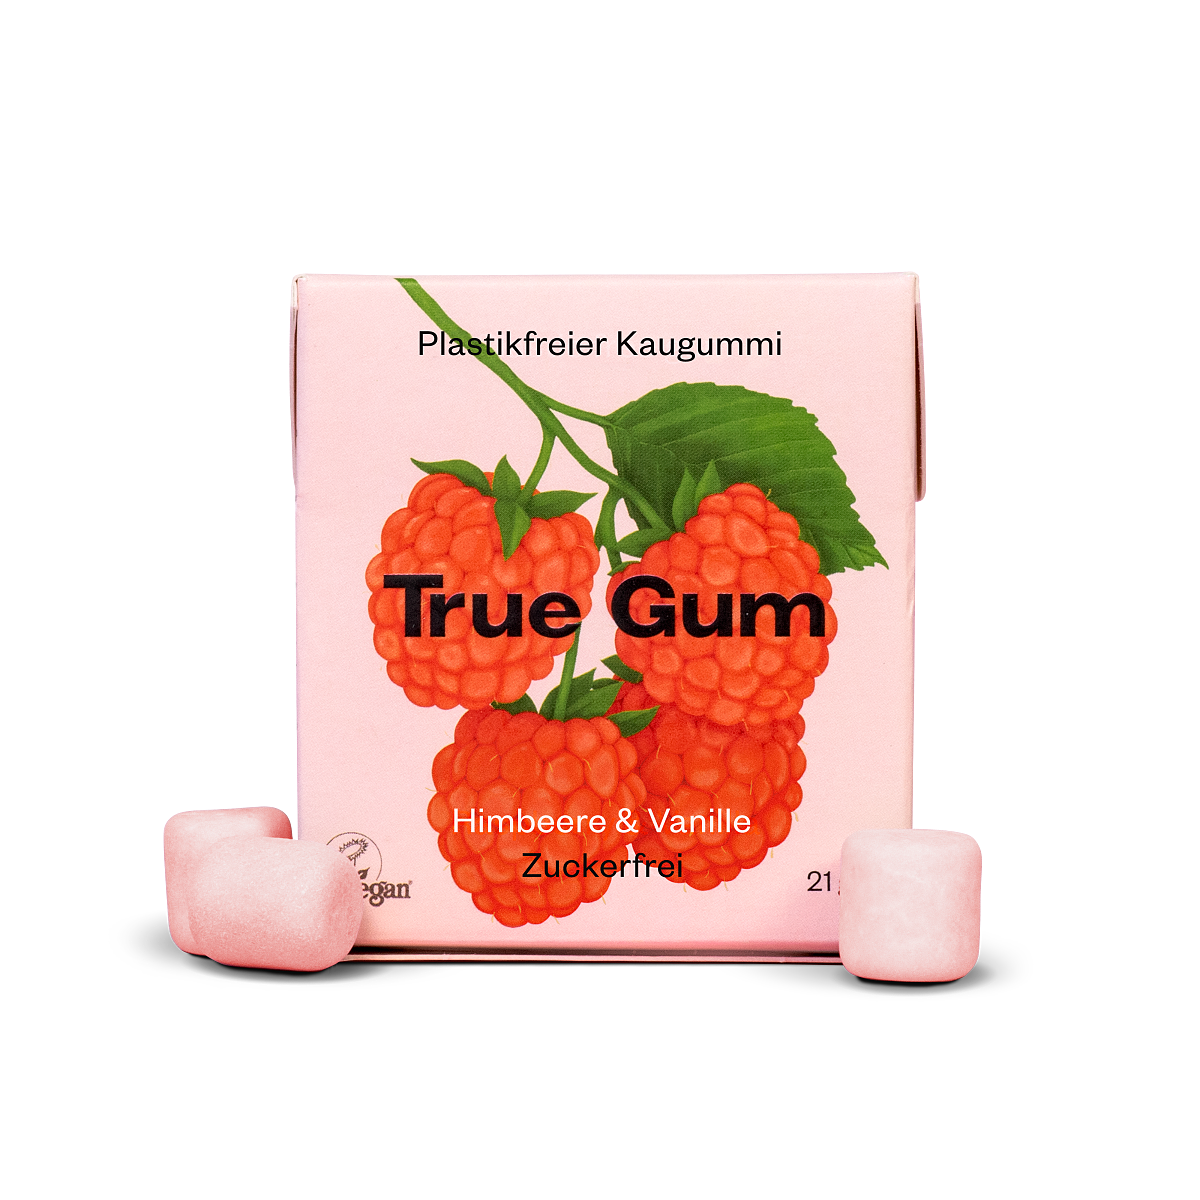 True Gum_Raspberry_EUR 1,99